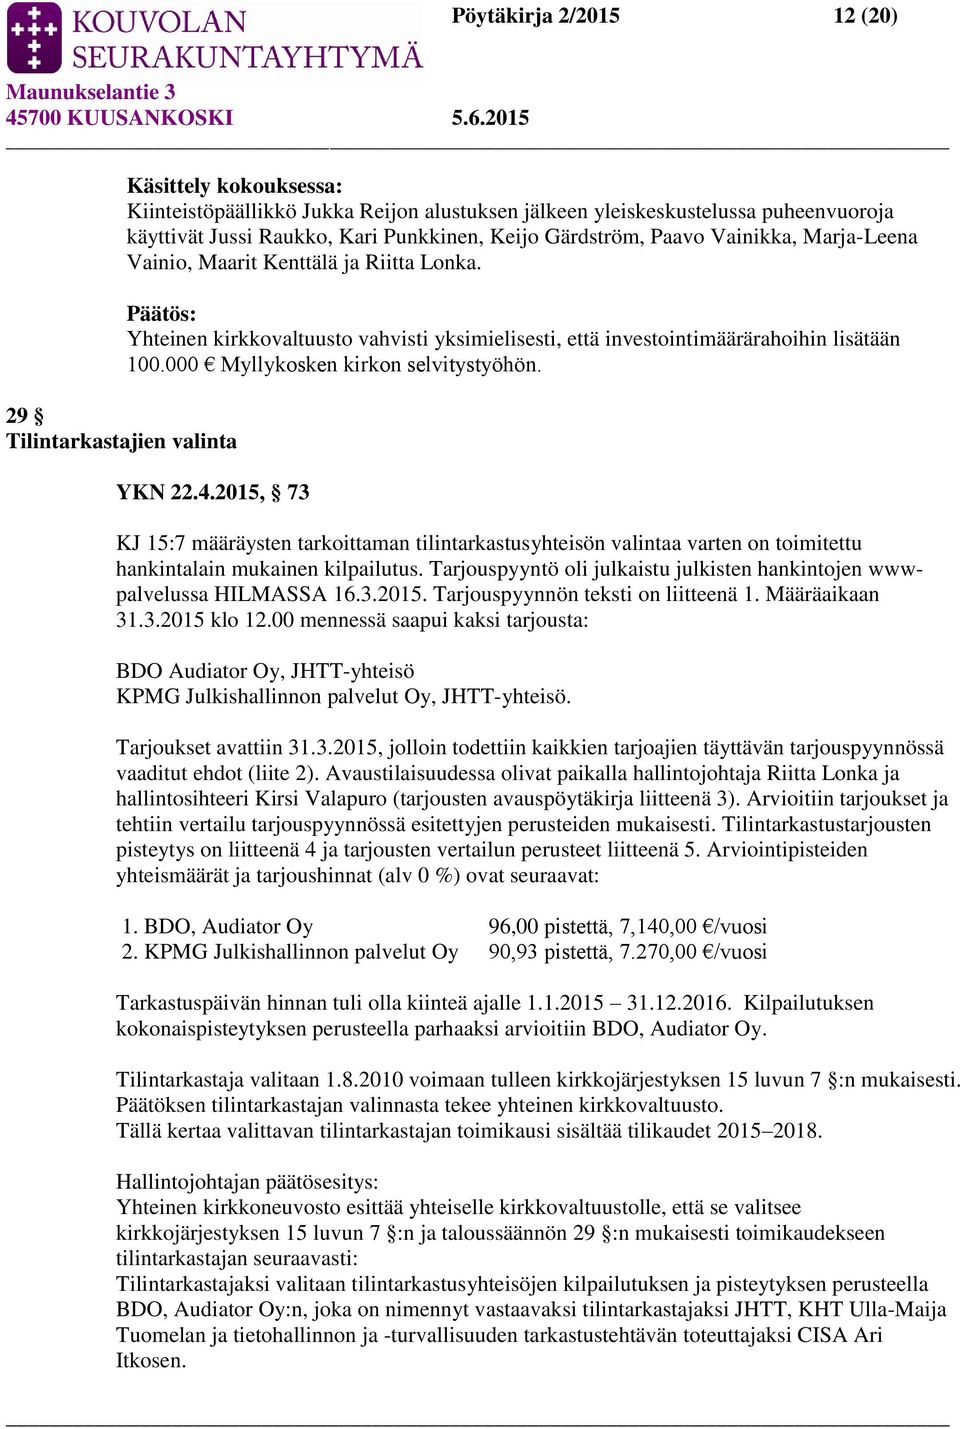 000 Myllykosken kirkon selvitystyöhön. YKN 22.4.2015, 73 KJ 15:7 määräysten tarkoittaman tilintarkastusyhteisön valintaa varten on toimitettu hankintalain mukainen kilpailutus.